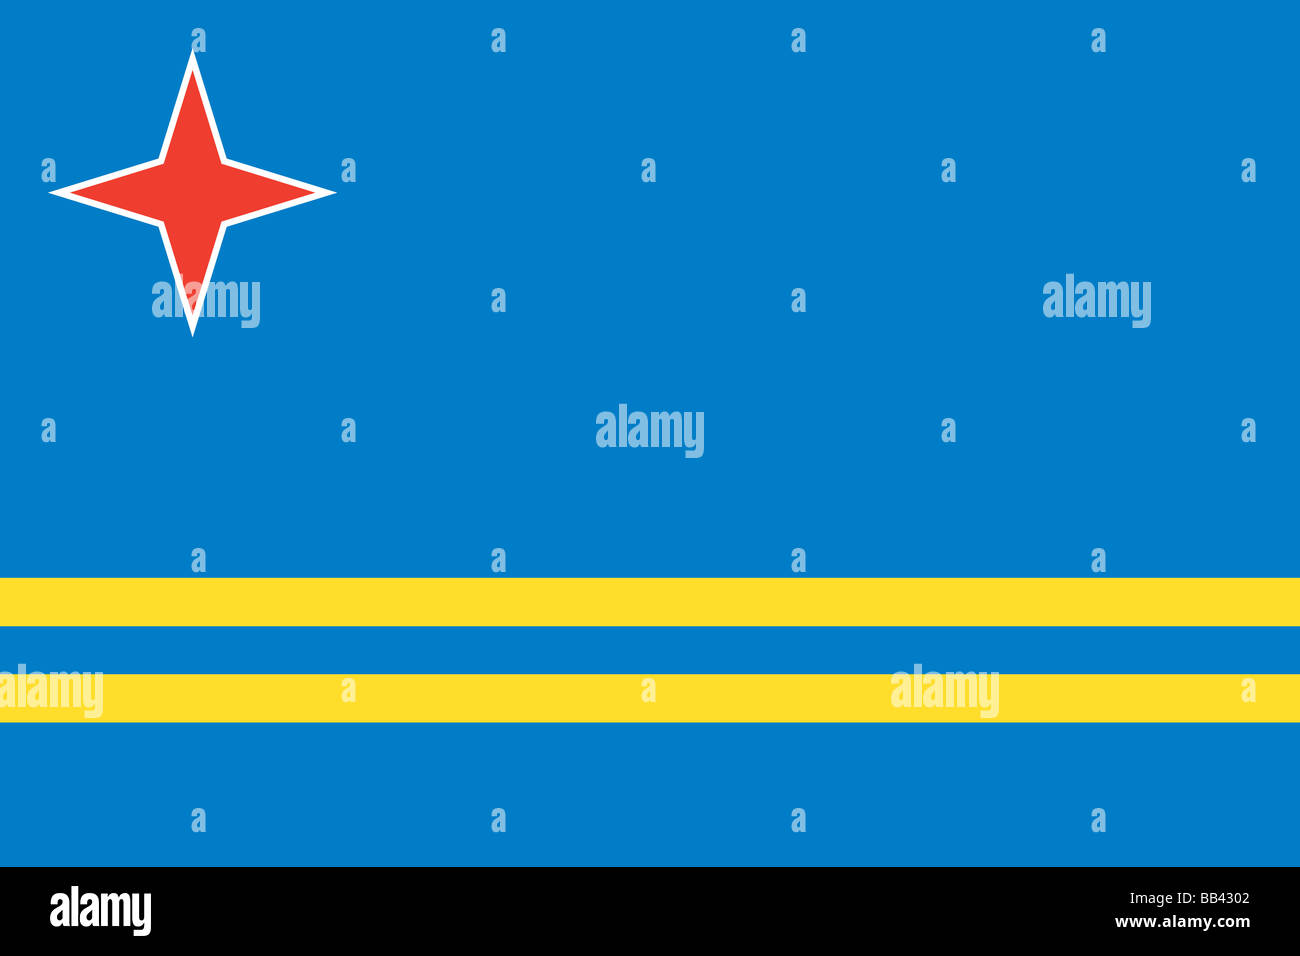 Flagge von Aruba, niederländische Gebiet im karibischen Meer. Stockfoto